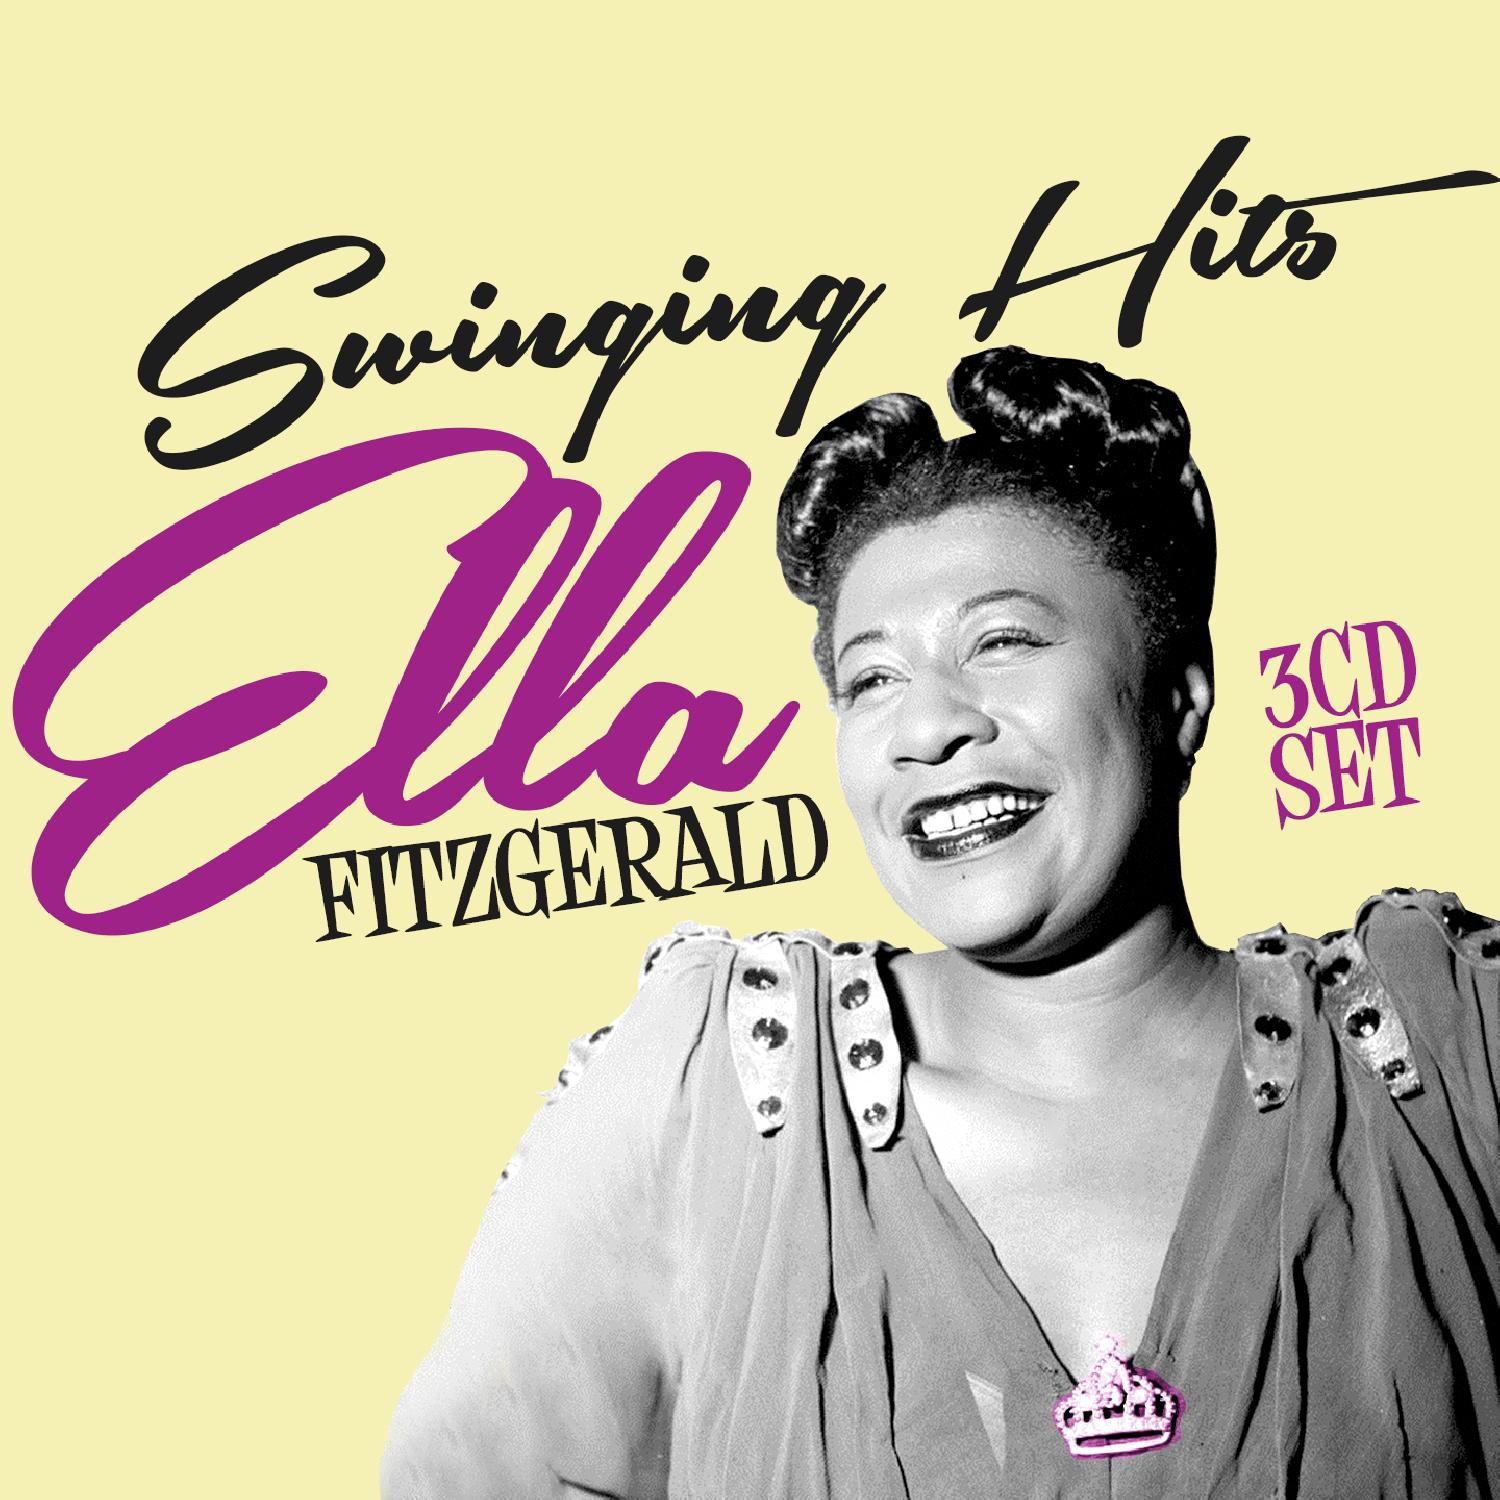 播 放 收 藏 分 享 下 载. Ella Fitzgerald. 发 行 公 司.ZYX Music. 歌 手. 发 行 时 间.2015-04-2...